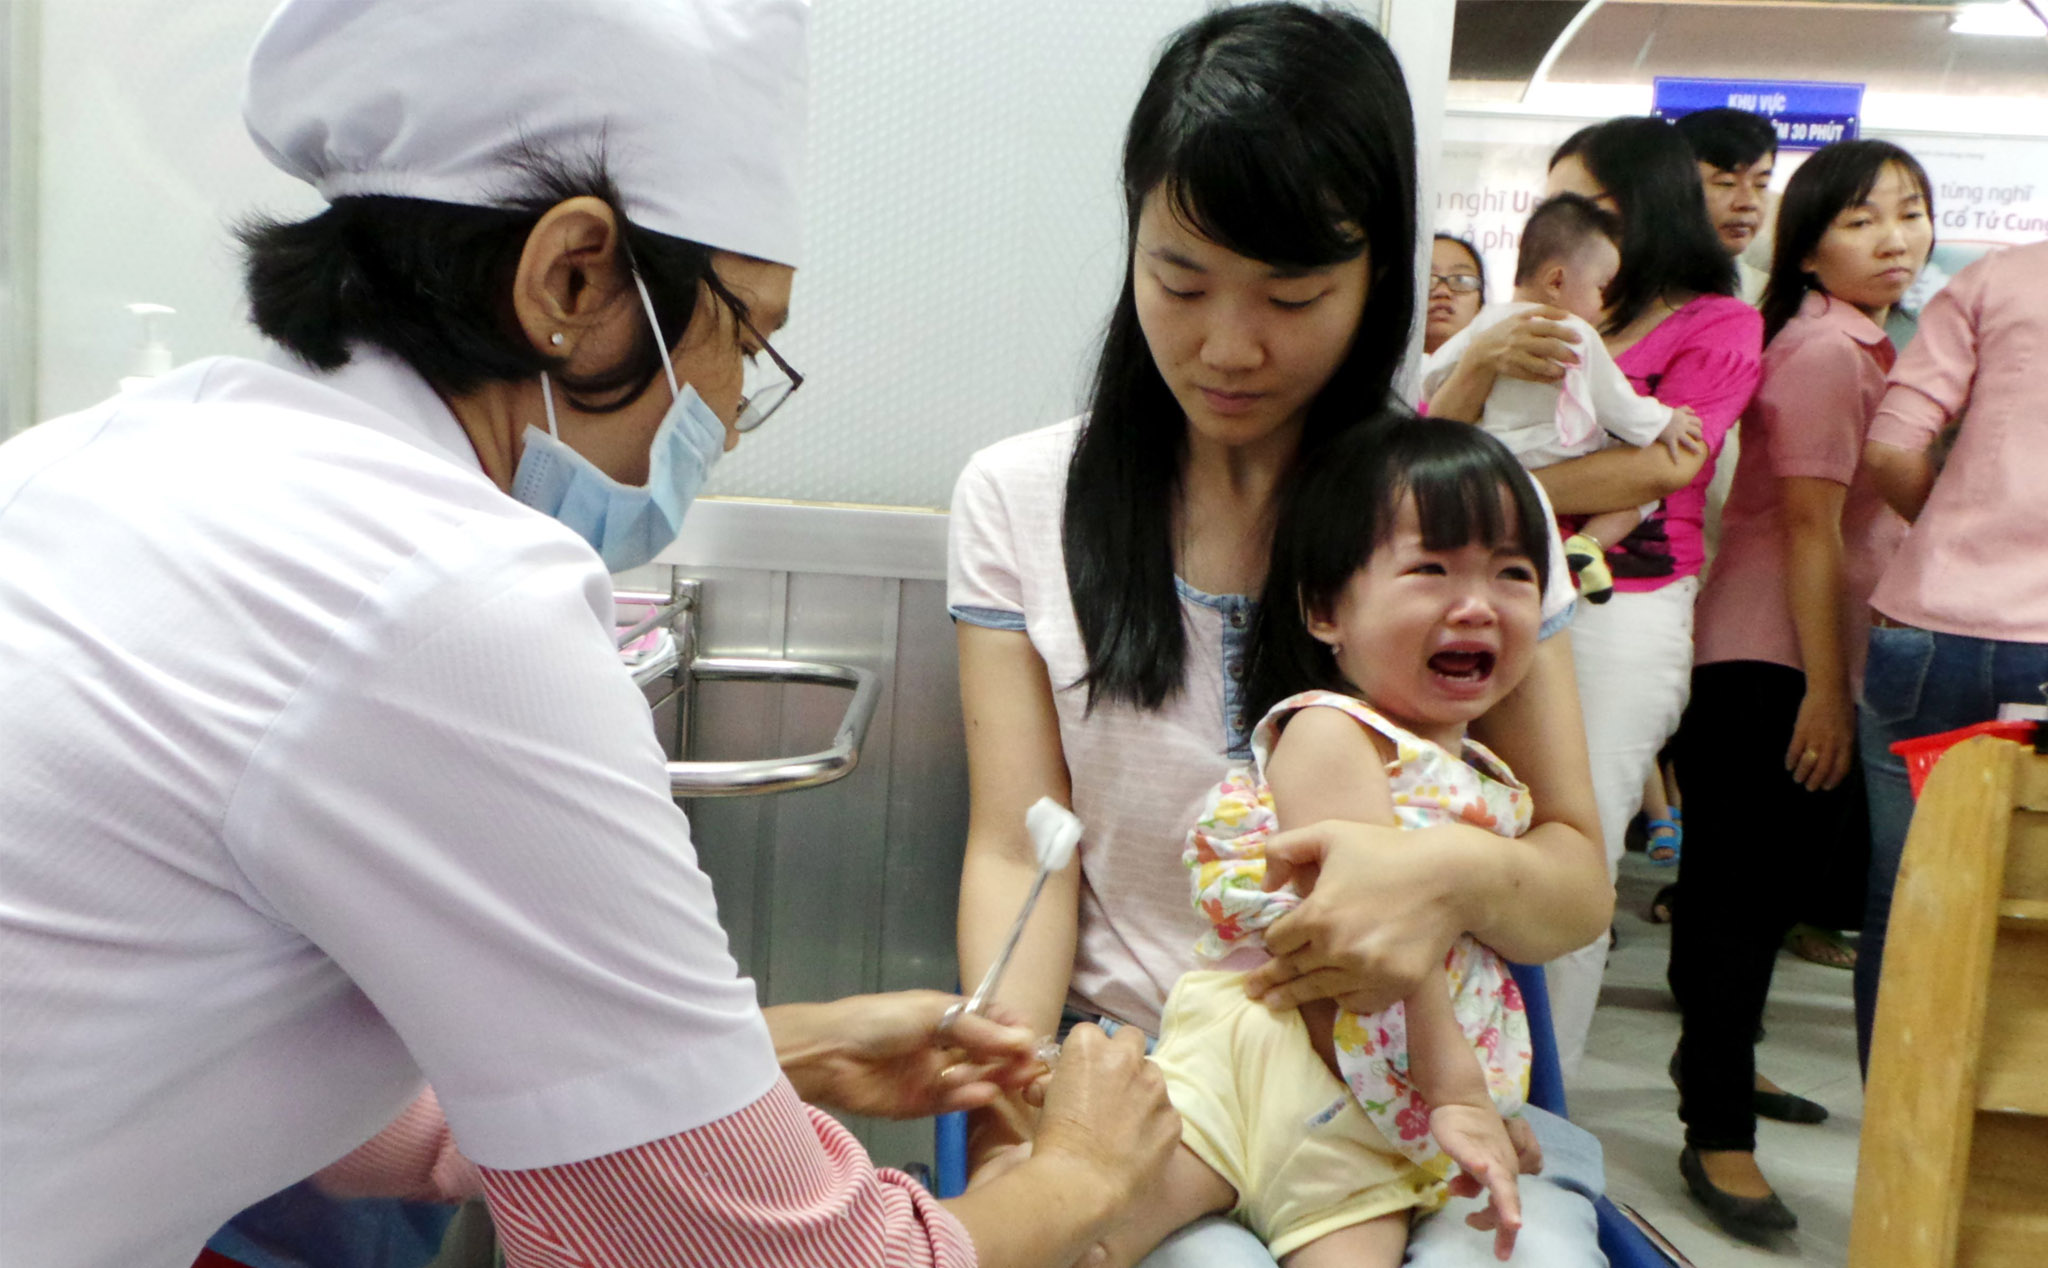 Sai lệch nhận thức: Lý do khiến các ông bố bà mẹ không tiêm vaccine cho con